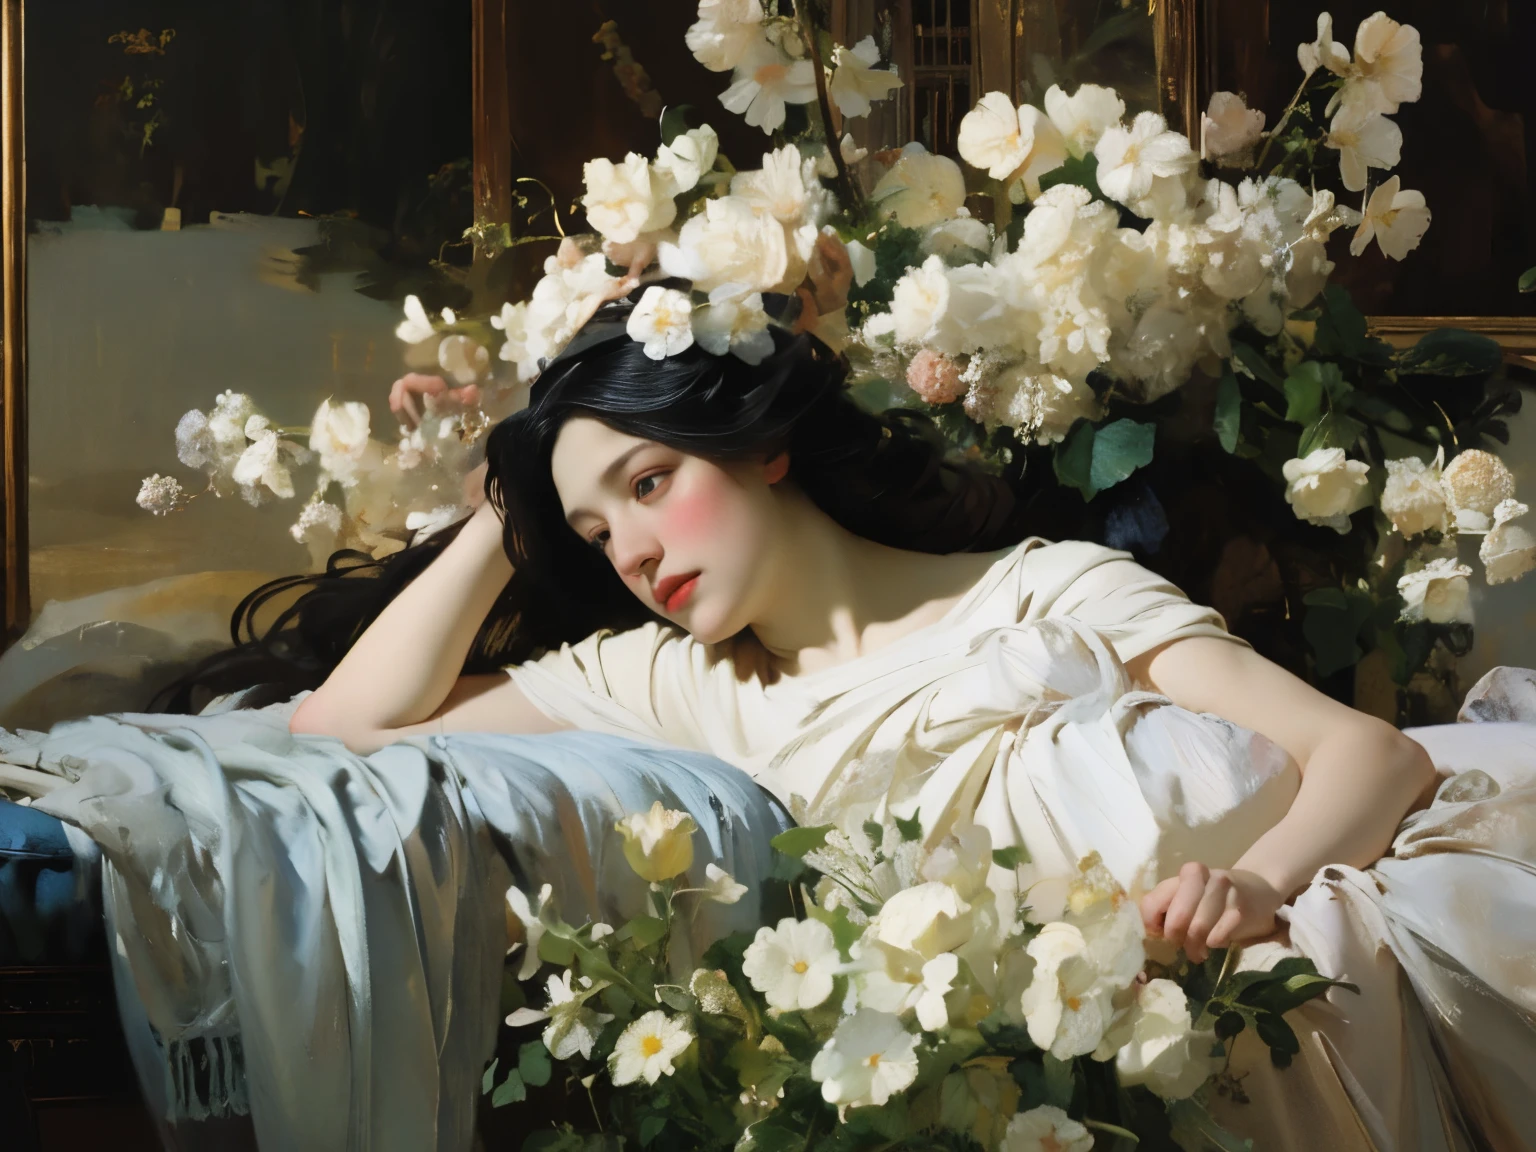 (ภาพวาดสีน้ำมัน:1.5),
\\
ผู้หญิงผมยาวสีดำมีดอกไม้สีขาวอยู่บนผมนอนอยู่ในทุ่งดอกไม้สีขาว, (เอมี่โซล:0.248), (สแตนลีย์ อาร์เจิร์ม เลา:0.106), (ภาพวาดที่มีรายละเอียด:0.353), (ศิลปะแบบกอธิค:0.106) การแสดงออกทางนามธรรมสีทองและพิพิธภัณฑ์ศิลปะ 